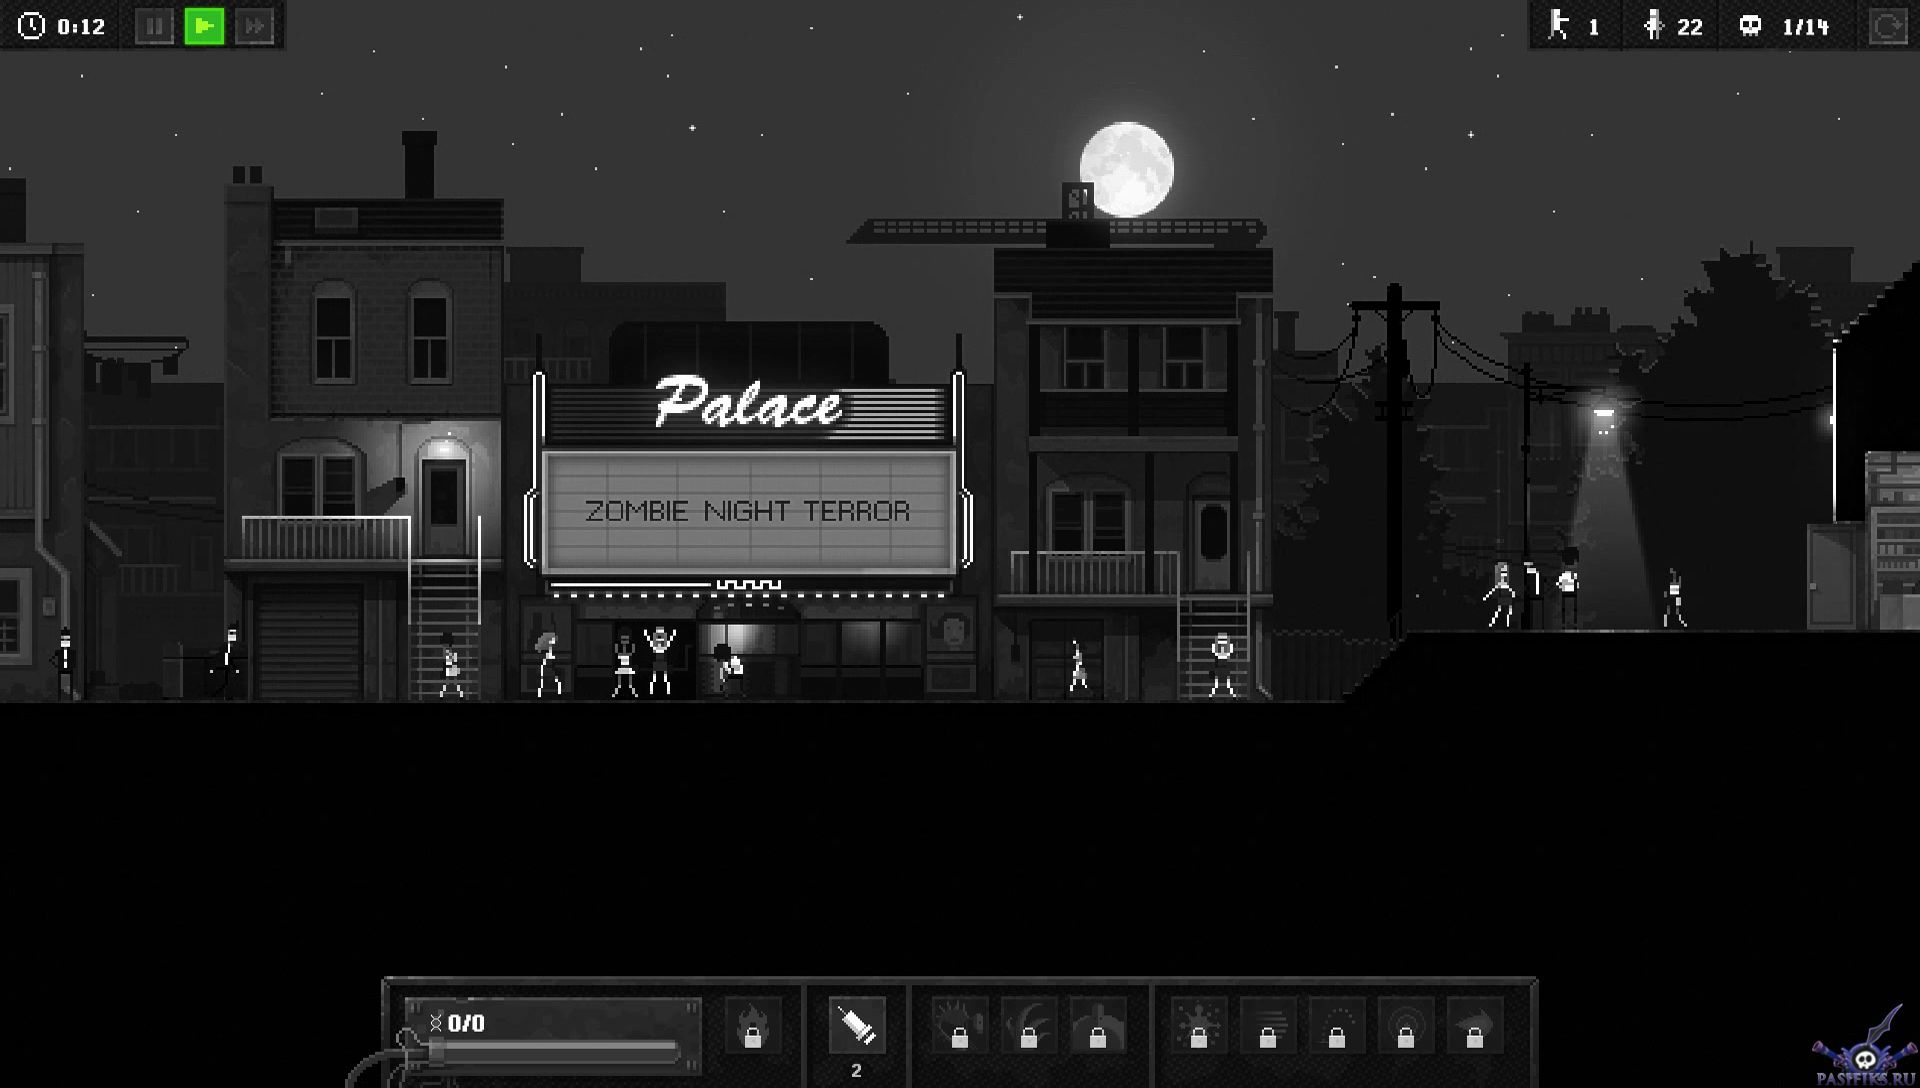 zombie-night-terror-screenshot